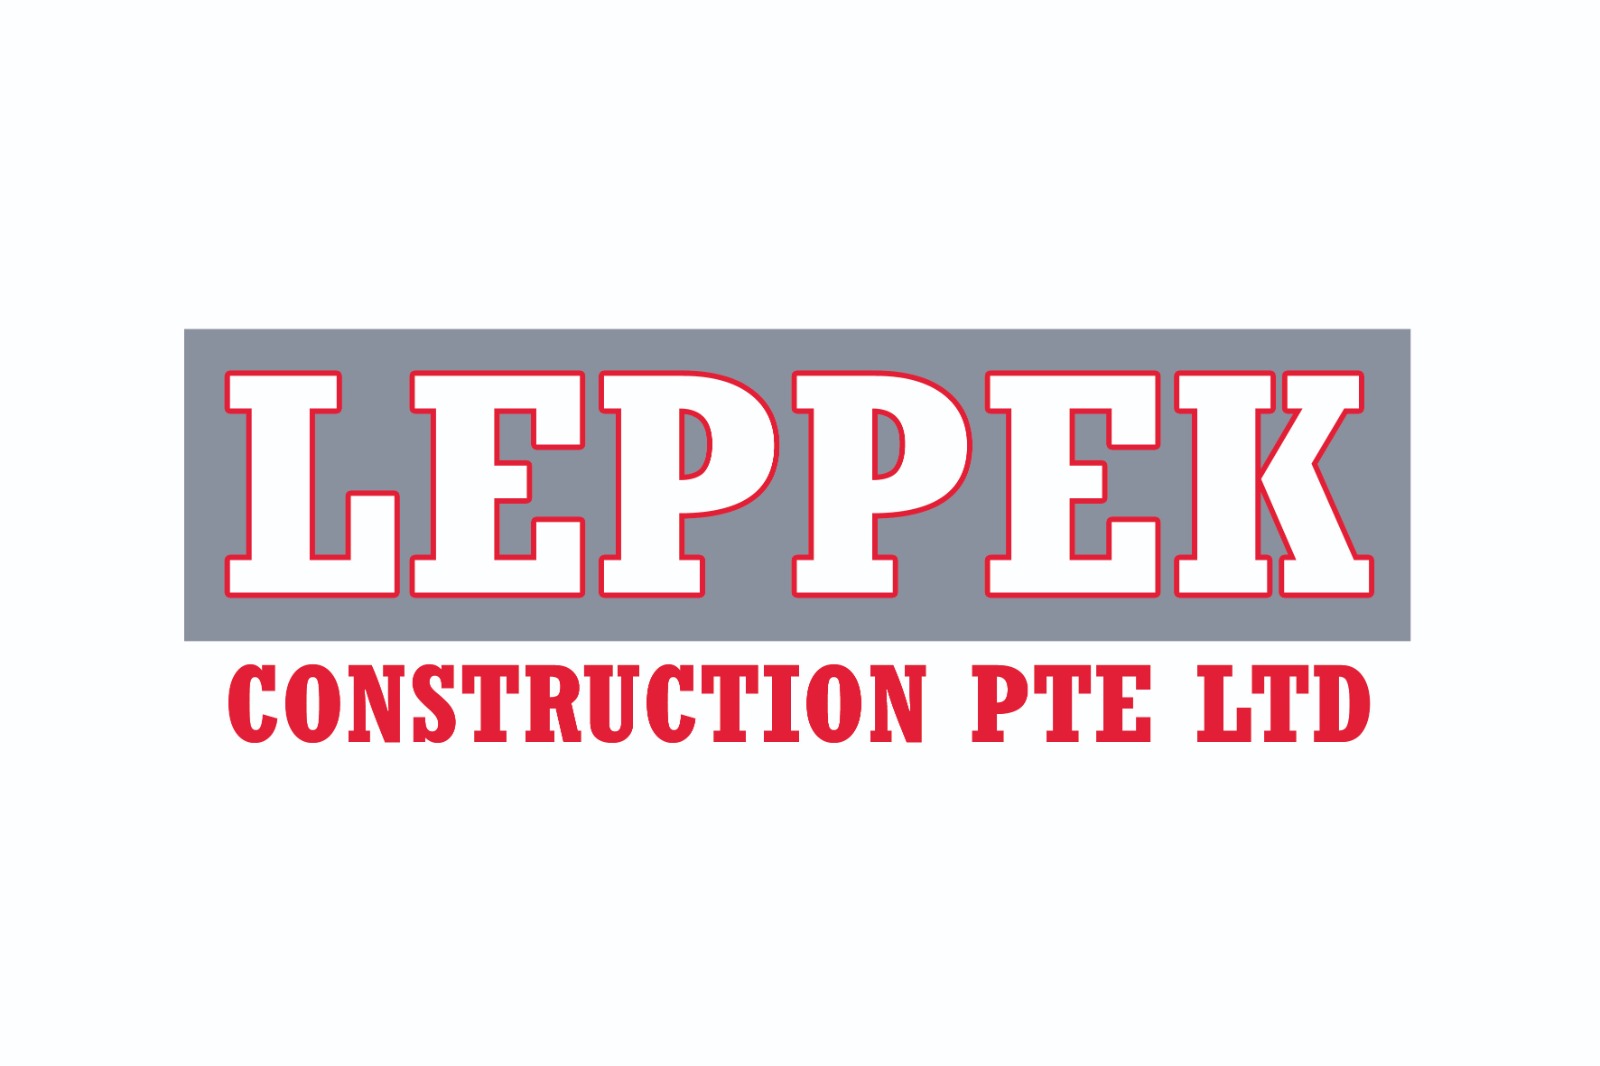 Leppek Construction